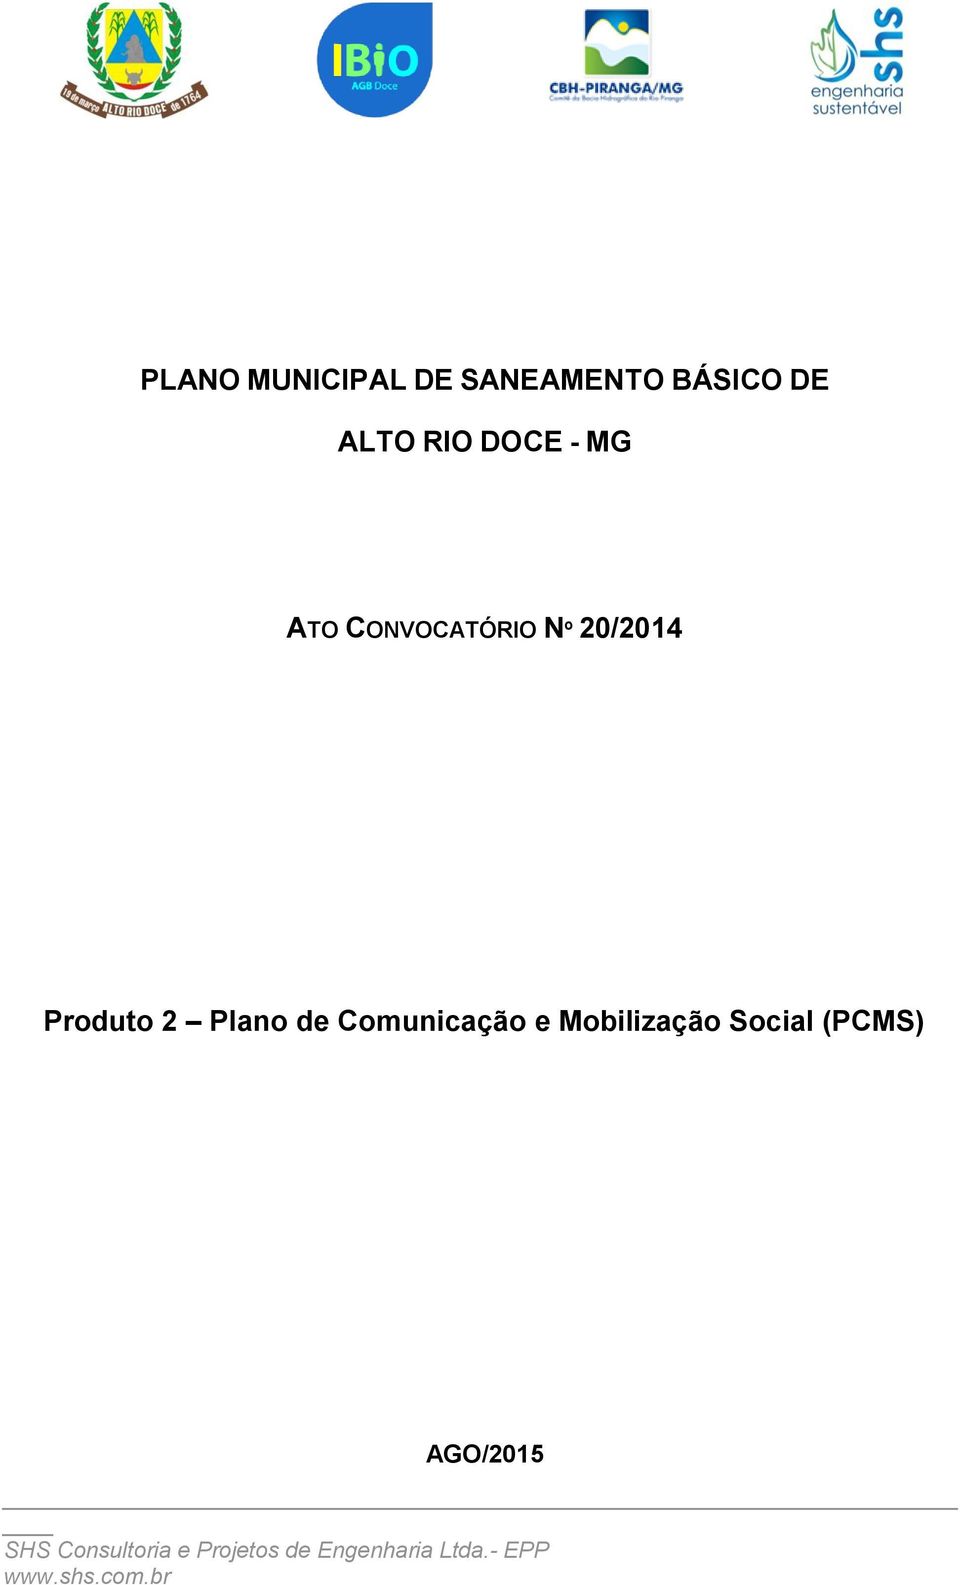 Plano de Comunicação e Mobilização Social (PCMS)